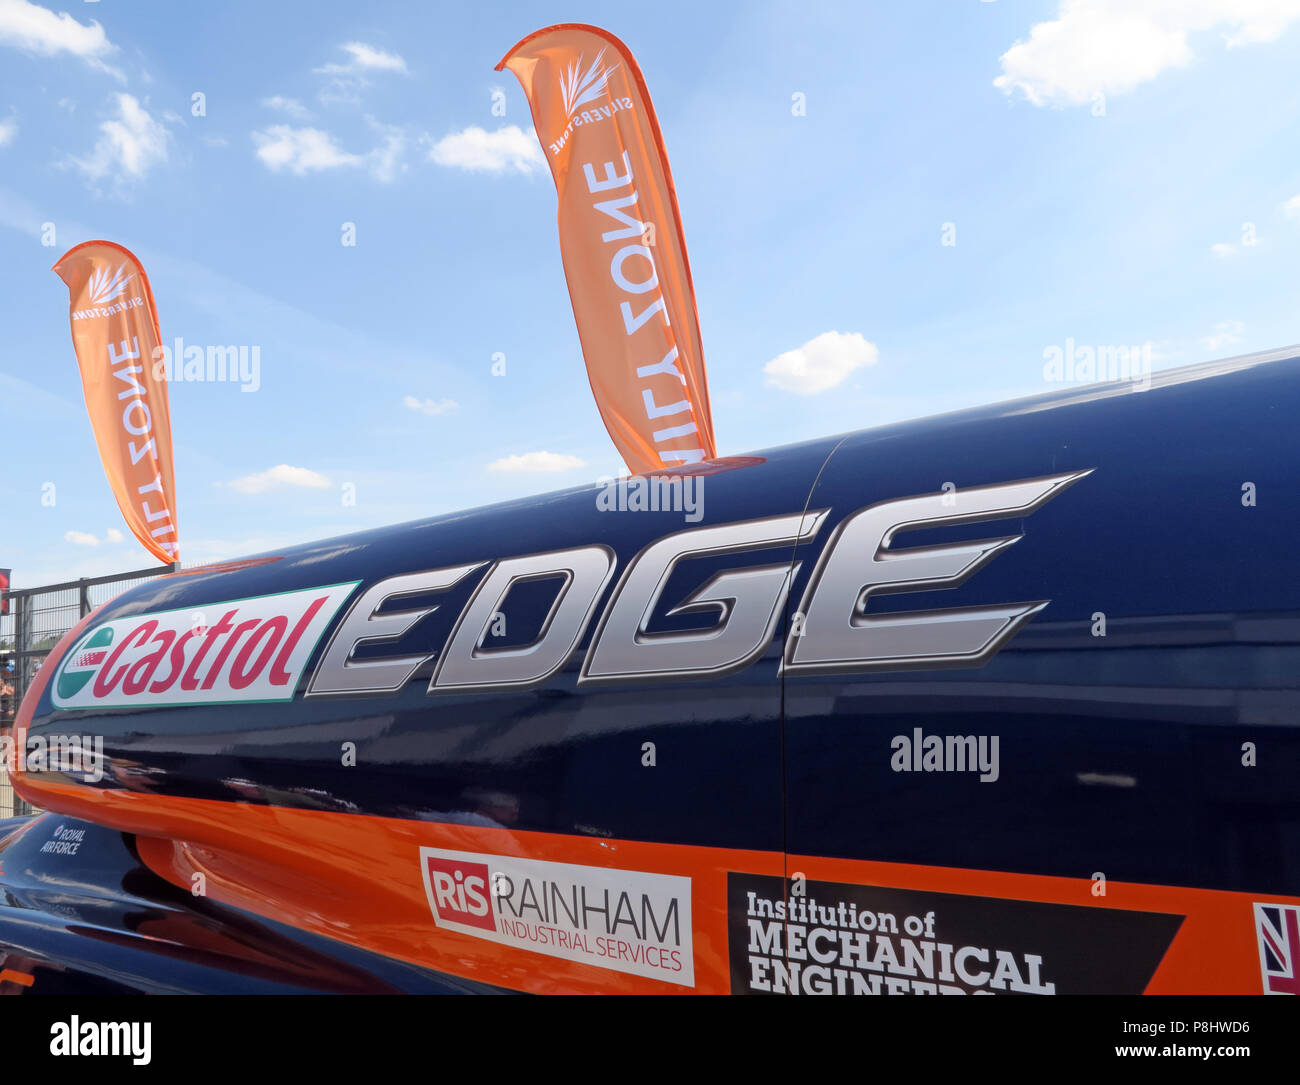 SSC Bloodhound voiture jet, maintenant, la LSR véhicule terrestre supersonique, à l'UTC, le circuit de course de Silverstone, Circuit de Silverstone Towcester, ,Angleterre,NN12 8TL Banque D'Images